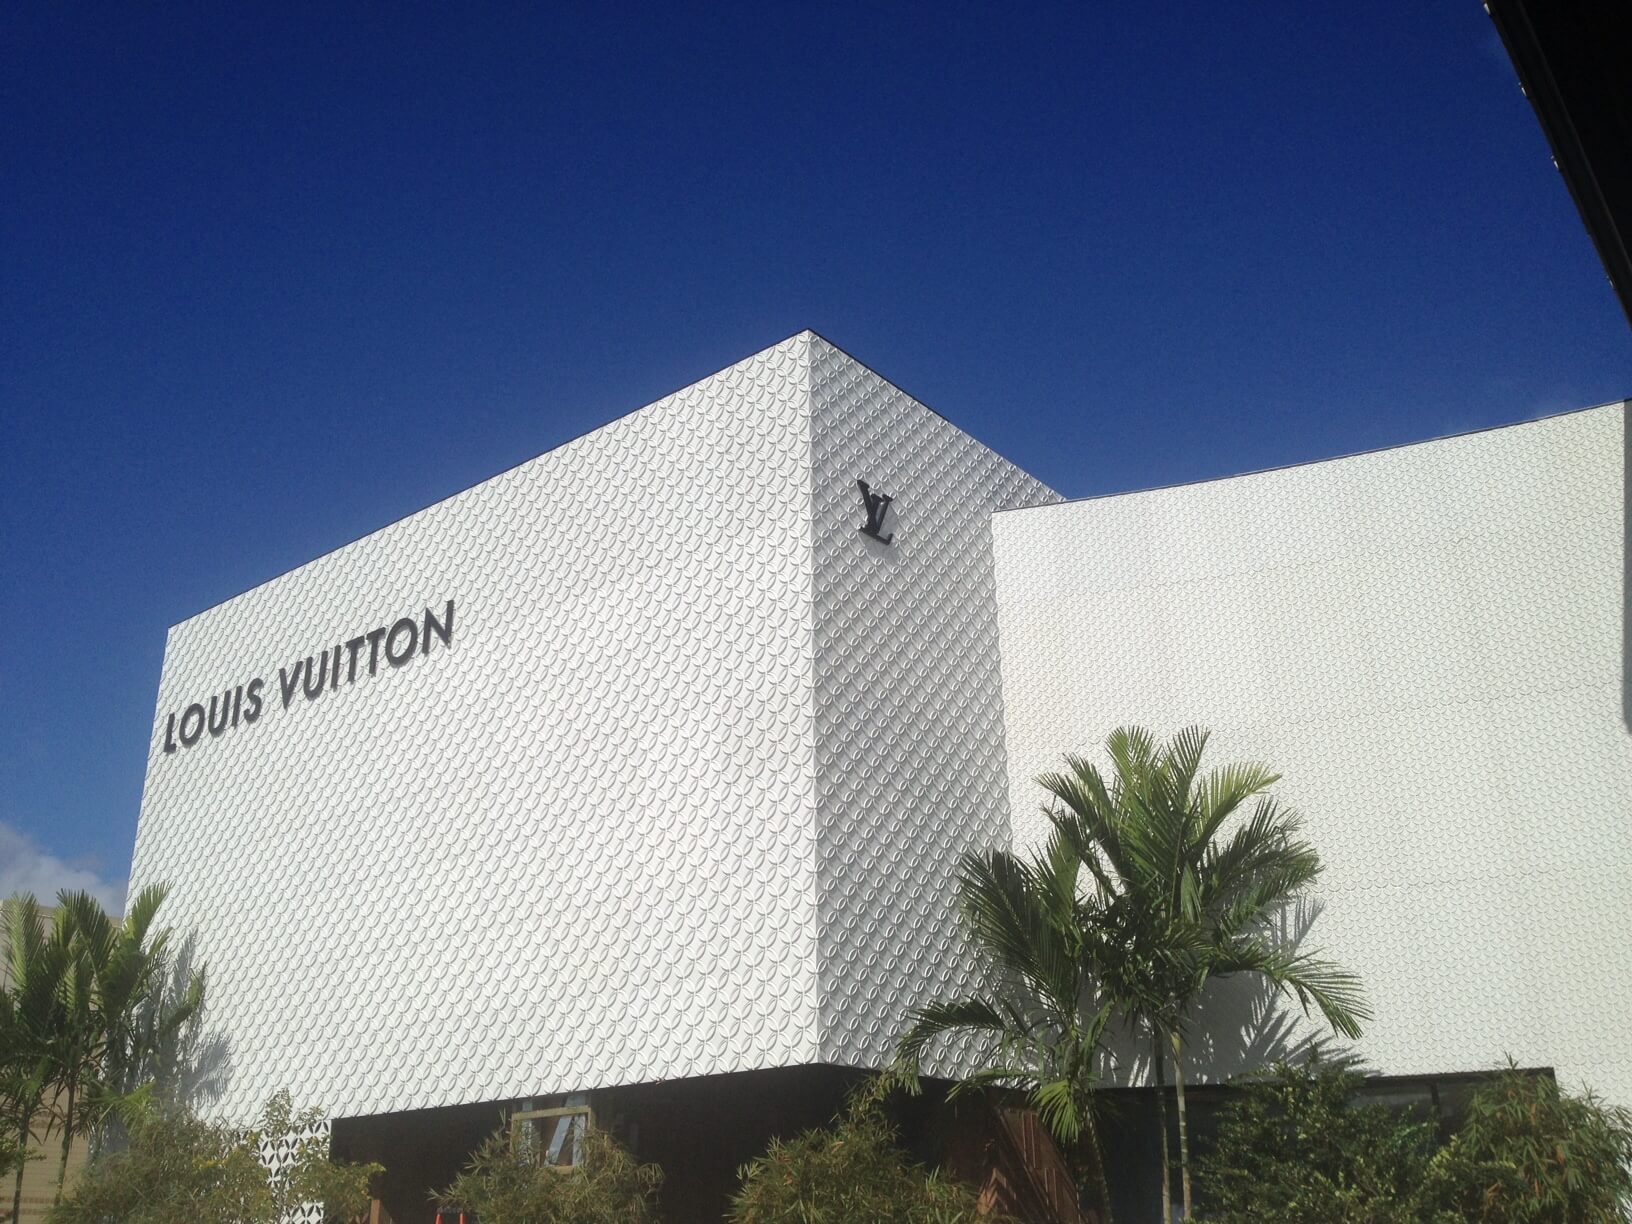 Maison Louis Vuitton Miami